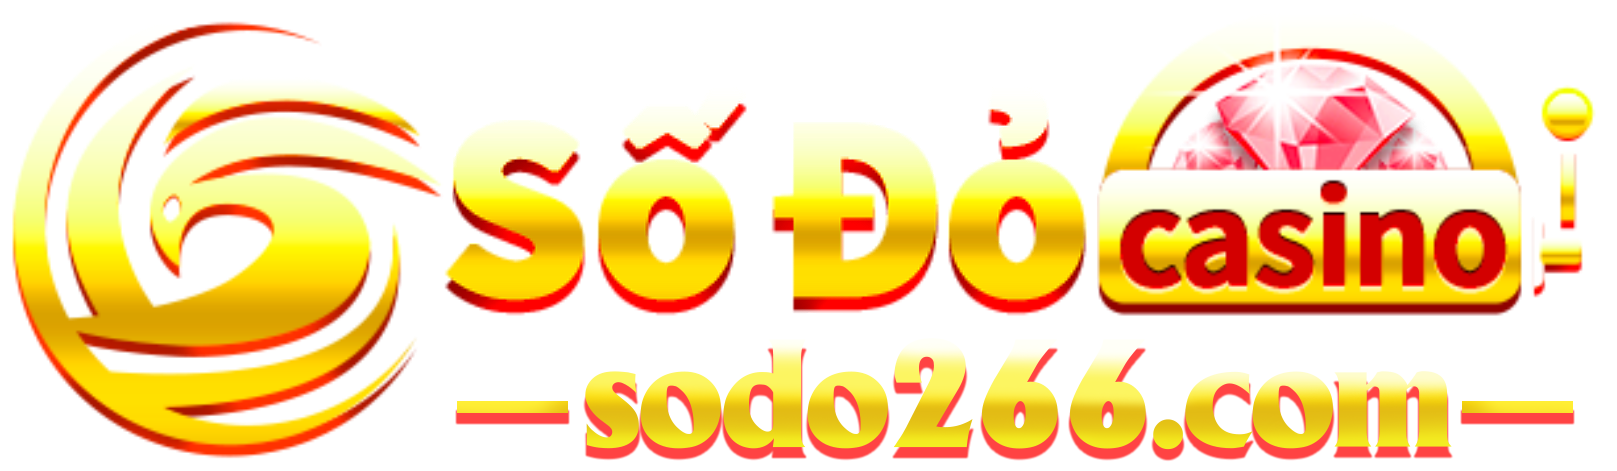 SODO CASINO – SODO266